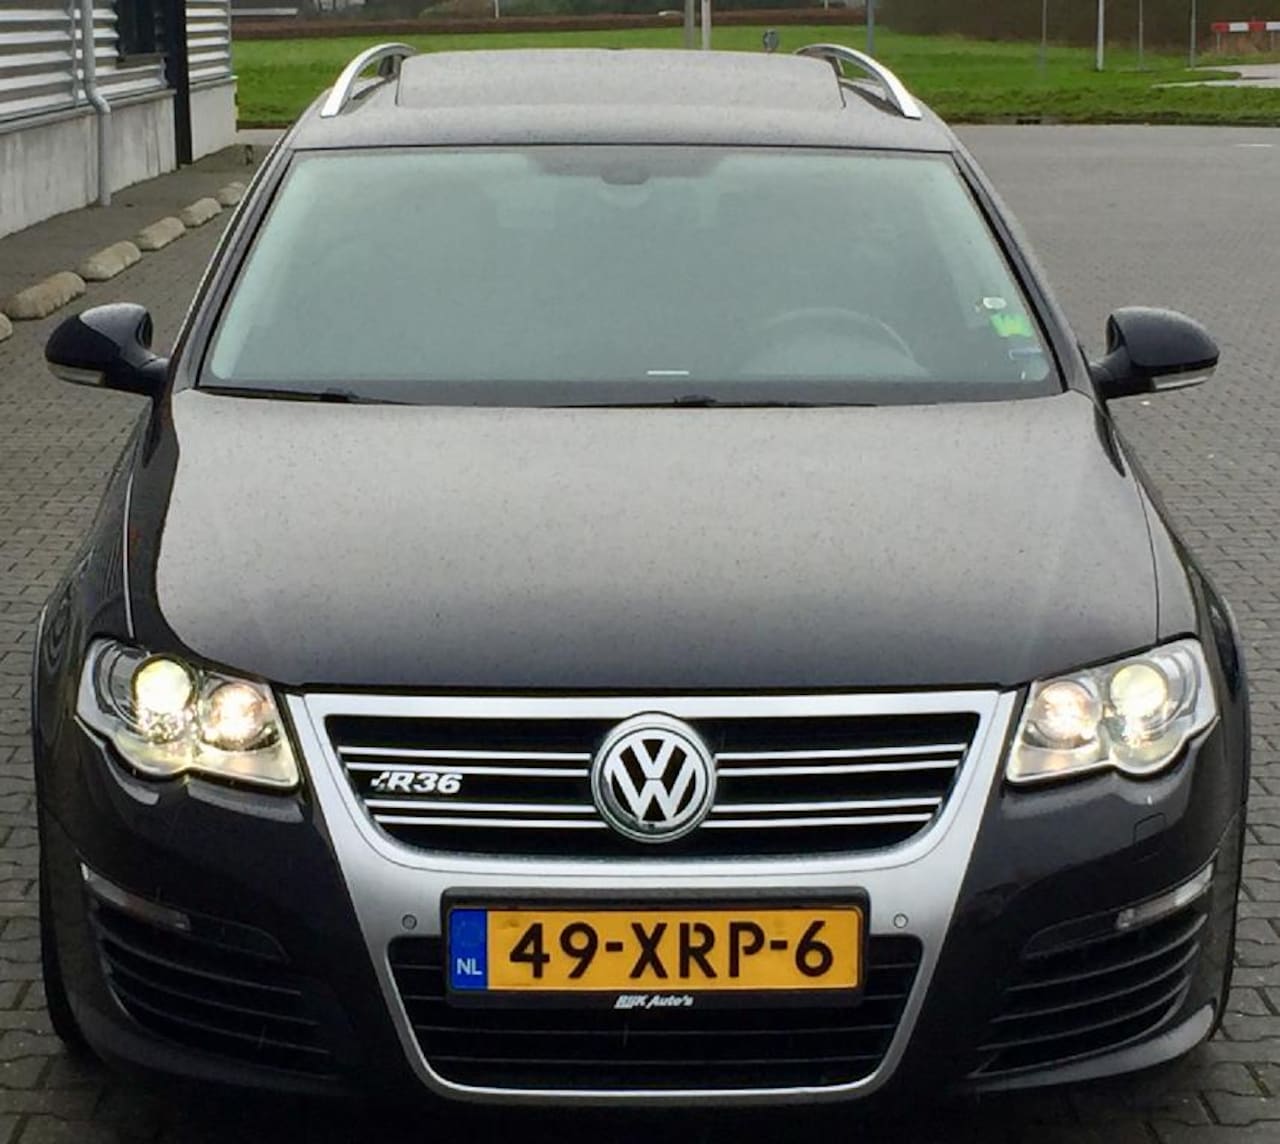 officieel Snelkoppelingen Magistraat Volkswagen Passat Variant UNIEK 2.0 TDI 170PK R36 EDITION VOL 2008 Diesel -  Occasion te koop op AutoWereld.nl